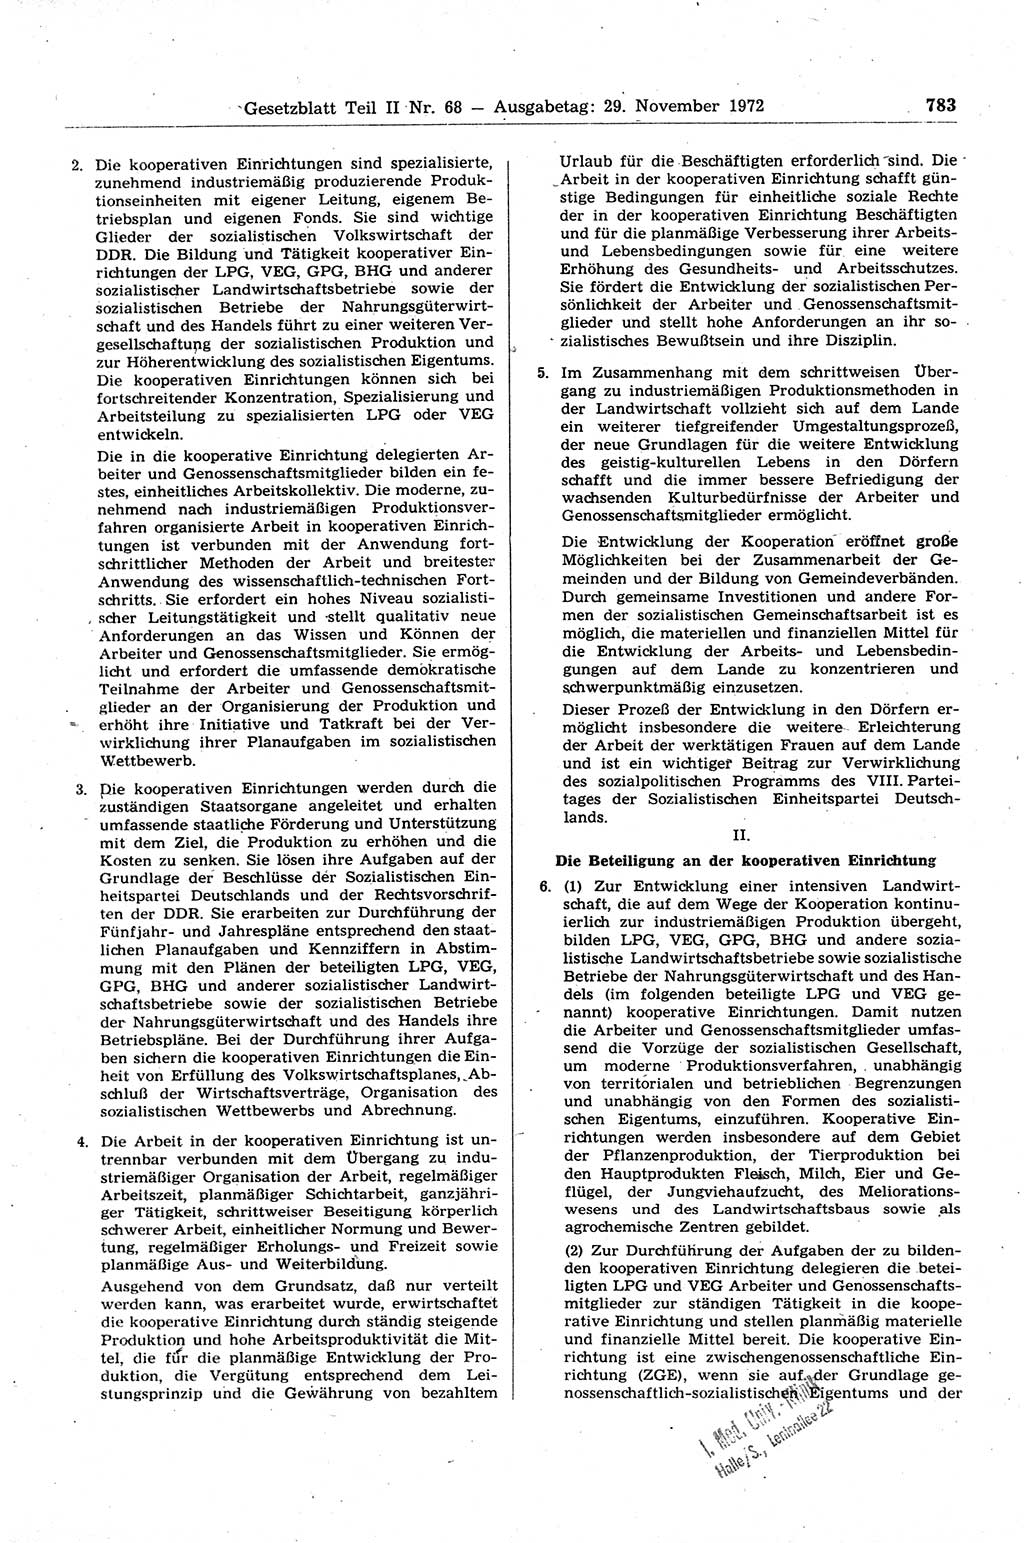 Gesetzblatt (GBl.) der Deutschen Demokratischen Republik (DDR) Teil ⅠⅠ 1972, Seite 783 (GBl. DDR ⅠⅠ 1972, S. 783)